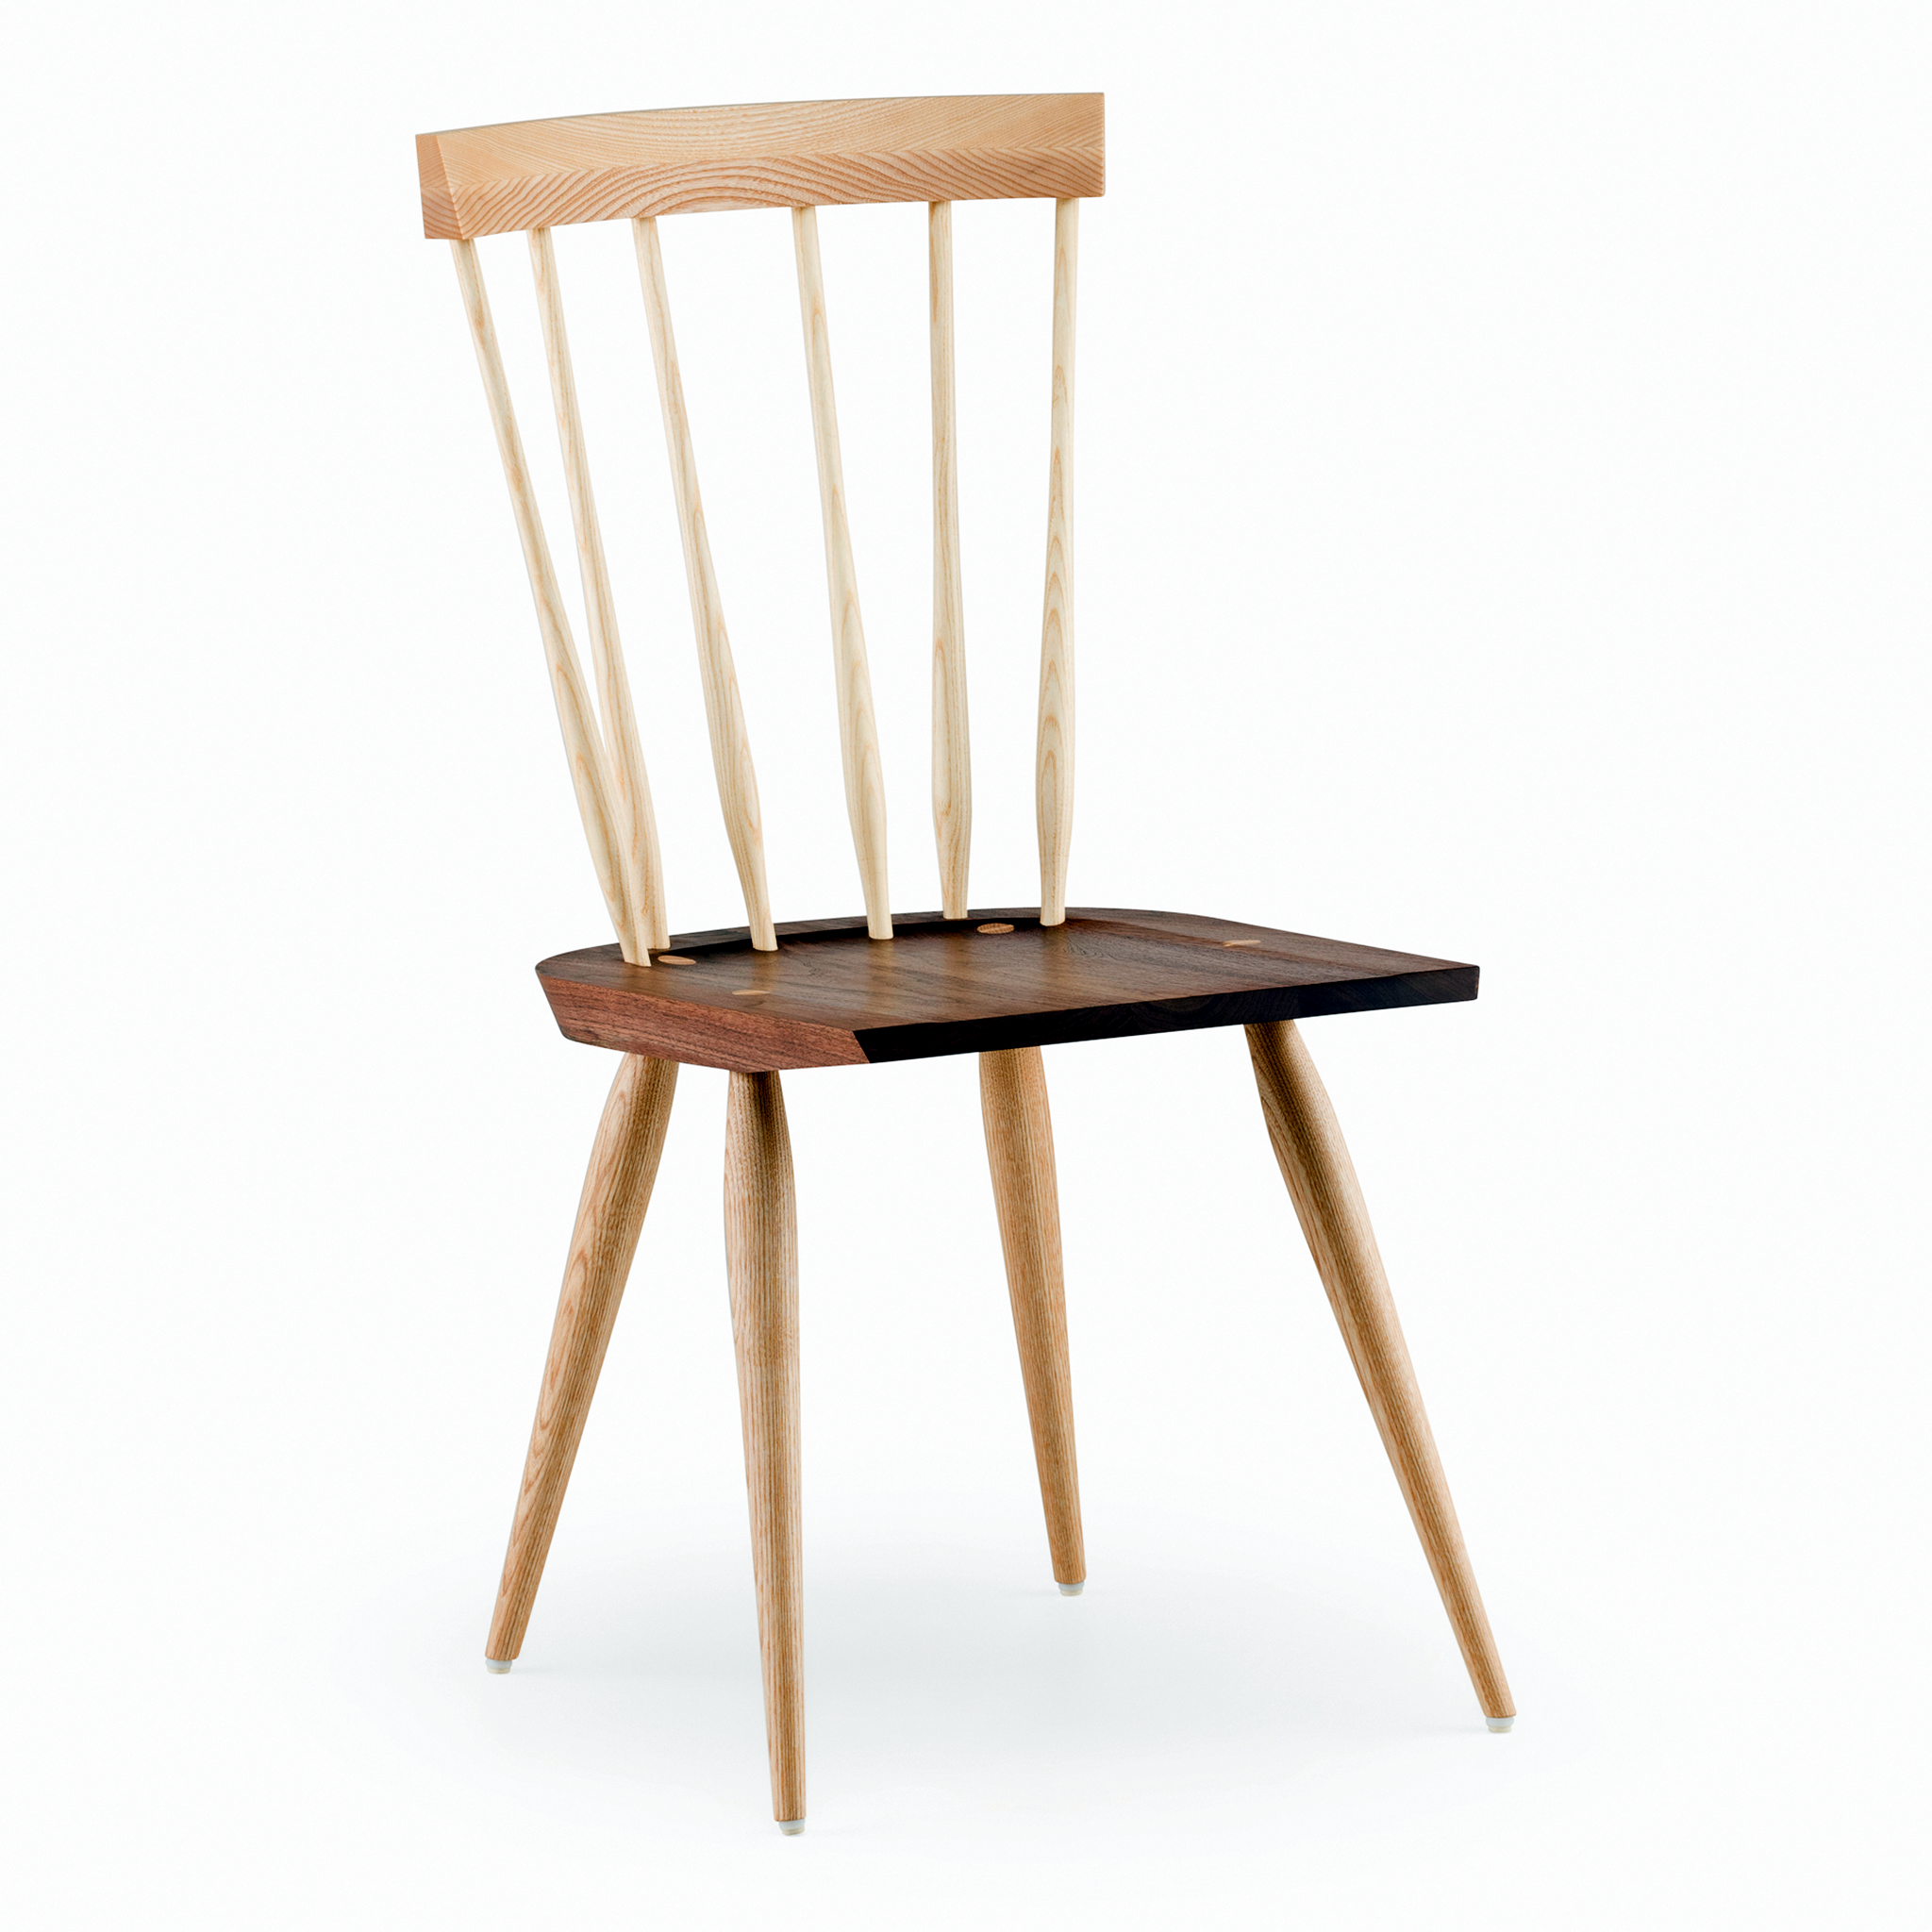 Hastoe Windsor Chair by Matthew Hilton